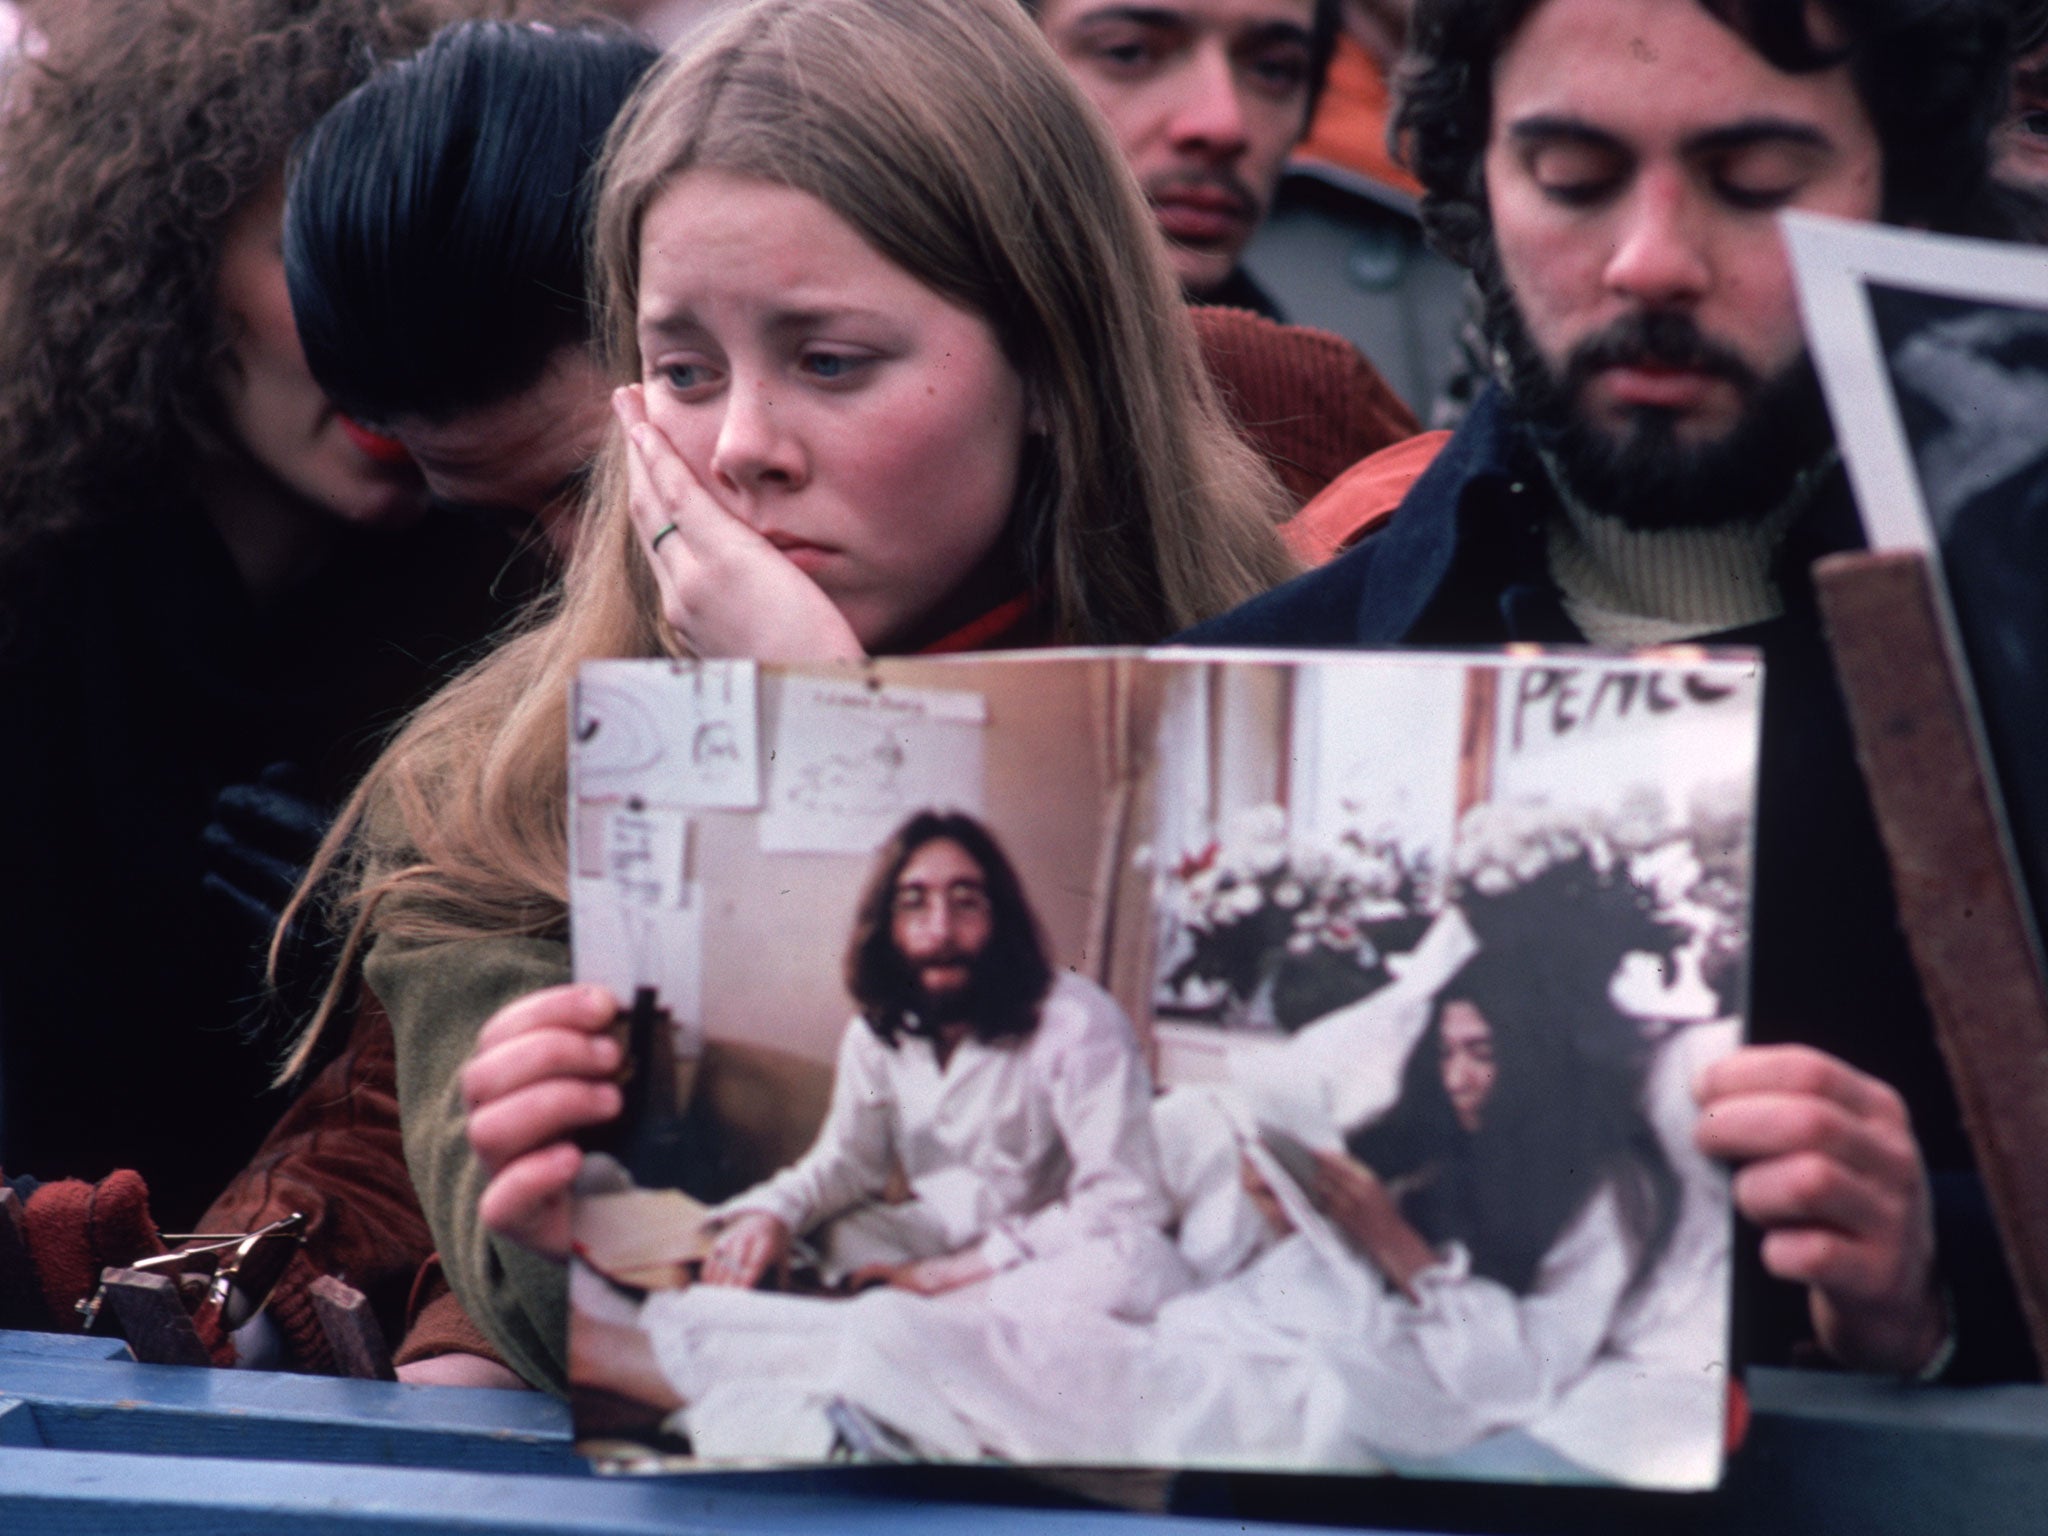 Fans mourn the death of John Lennon in 1980